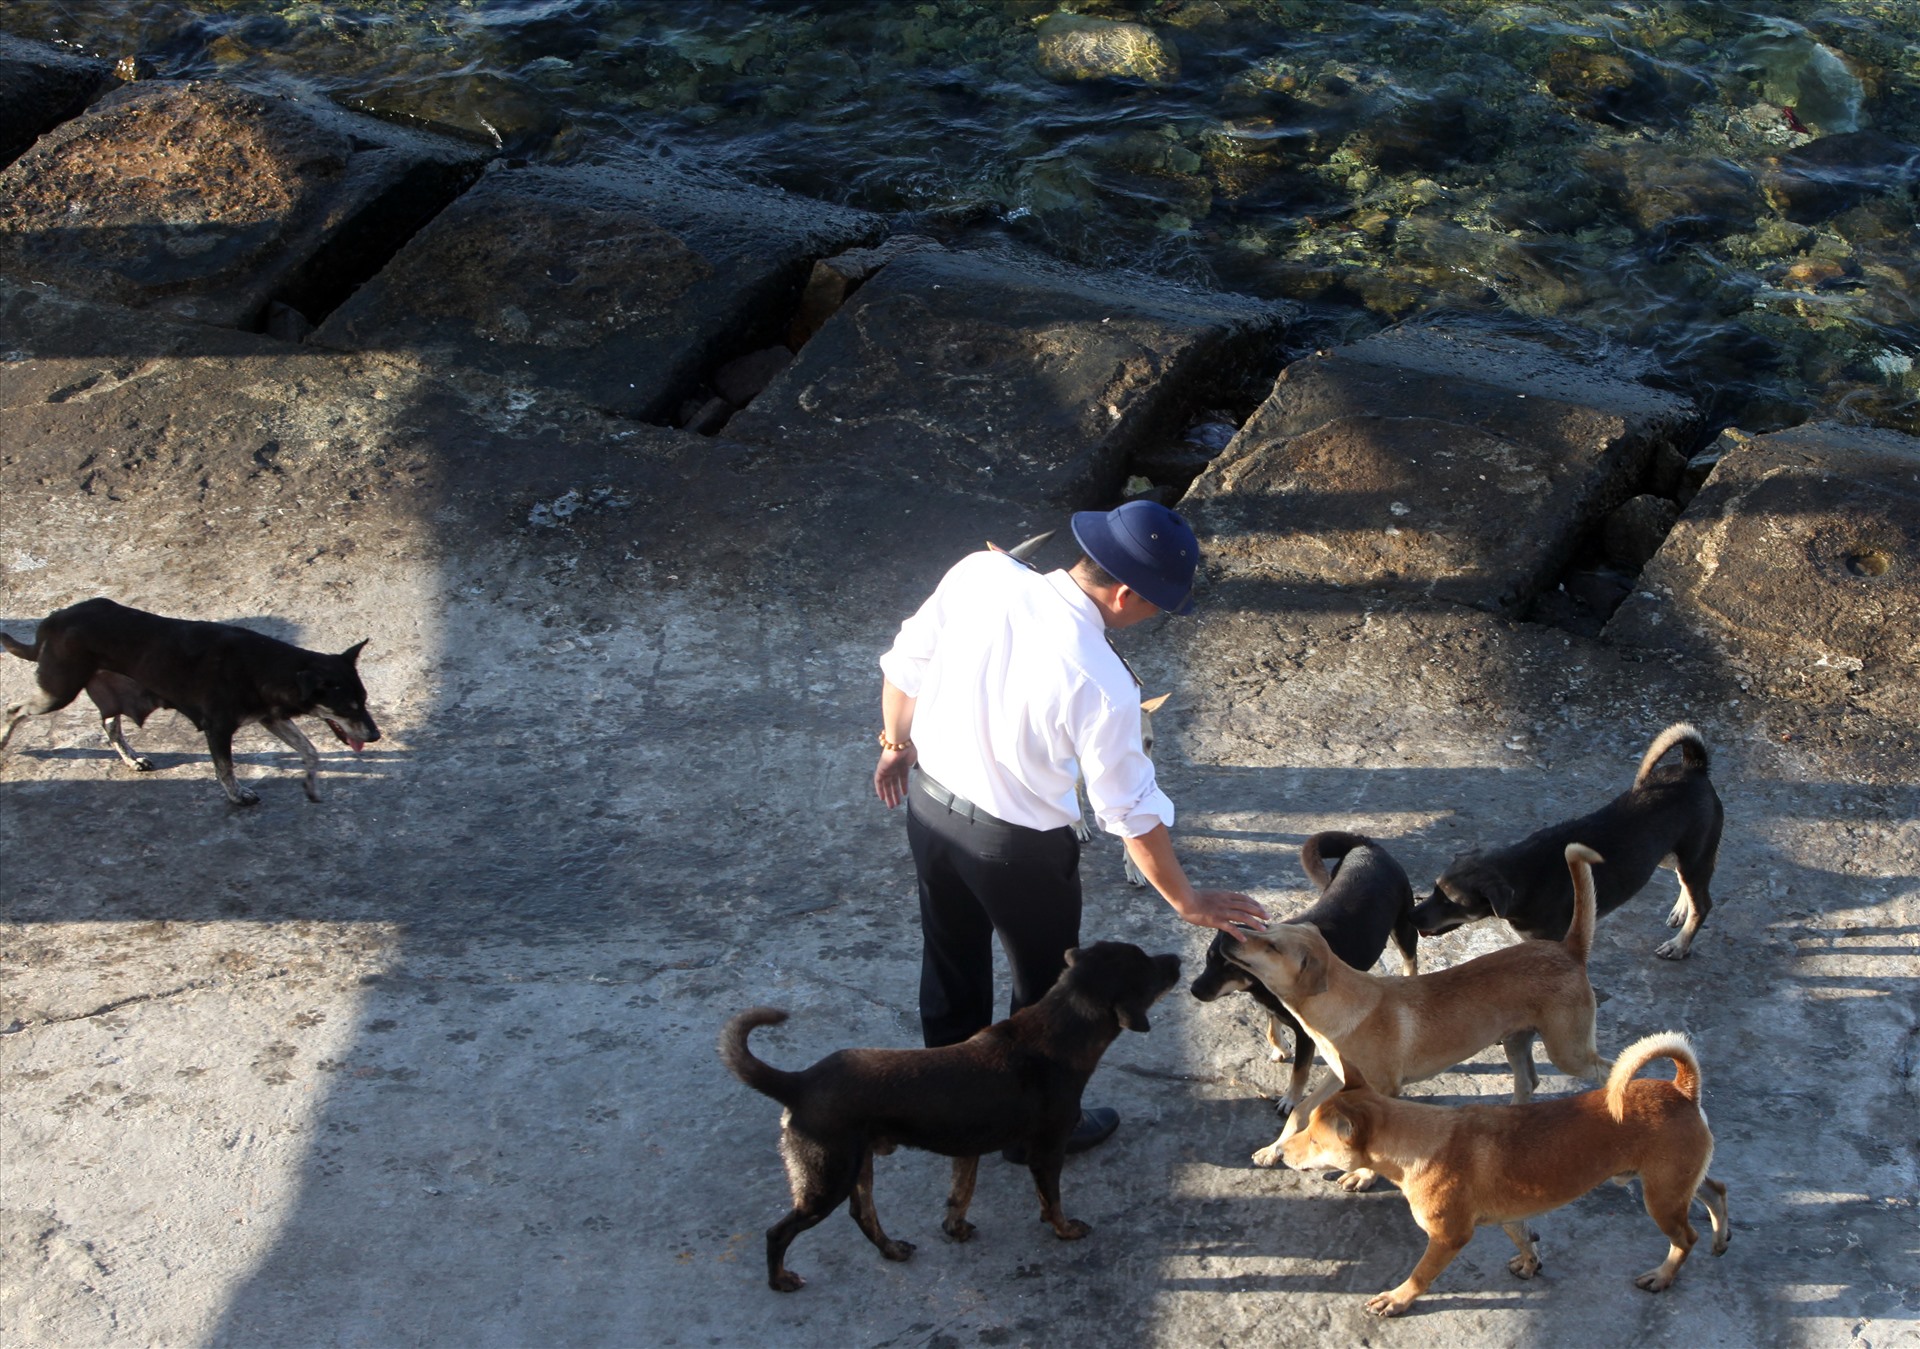 “Quân khuyển” ở đảo Thuyền Chài vốn dữ dằn. Hôm chúng tôi đến thăm đảo, cán bộ chiến sĩ đảo Thuyền Chài nựng đàn chó để đảm bảo an toàn cho khách thăm.